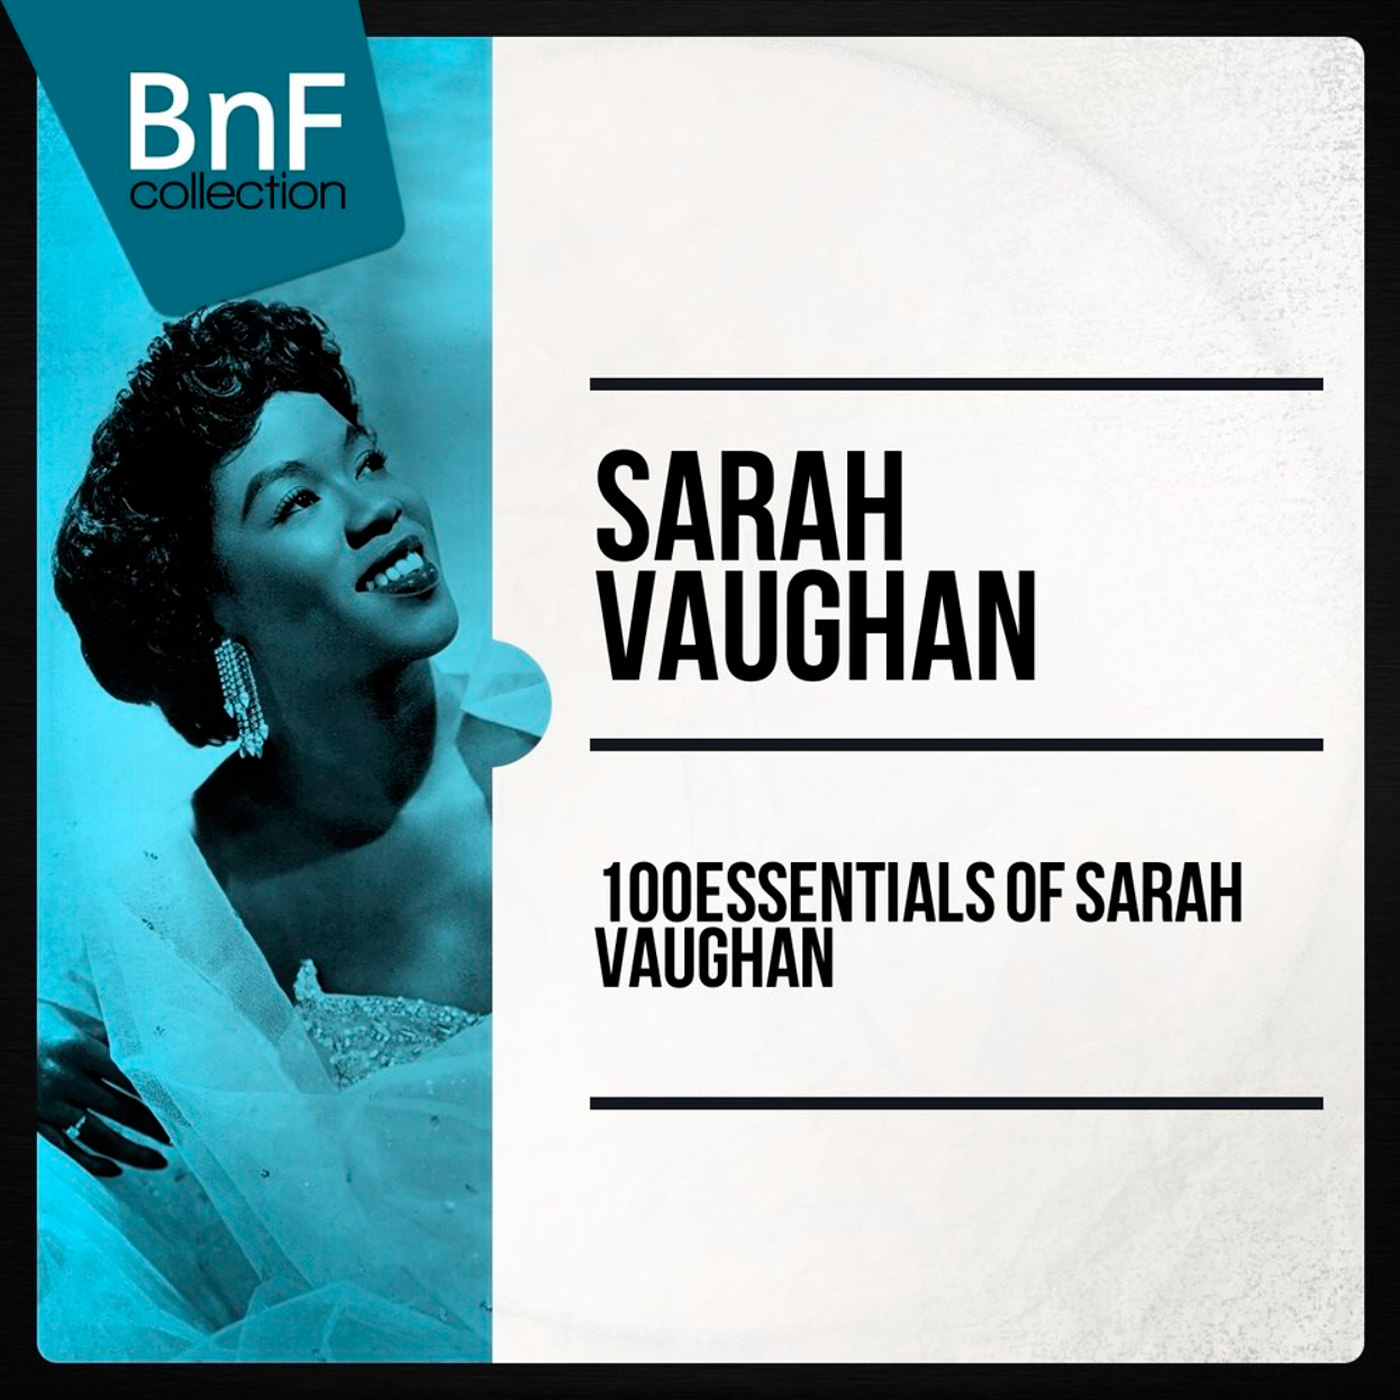 Sarah Vaughan - 10 Essentials Of Sarah Vaughan (2015) [Qobuz FLAC 24bit/96kHz]